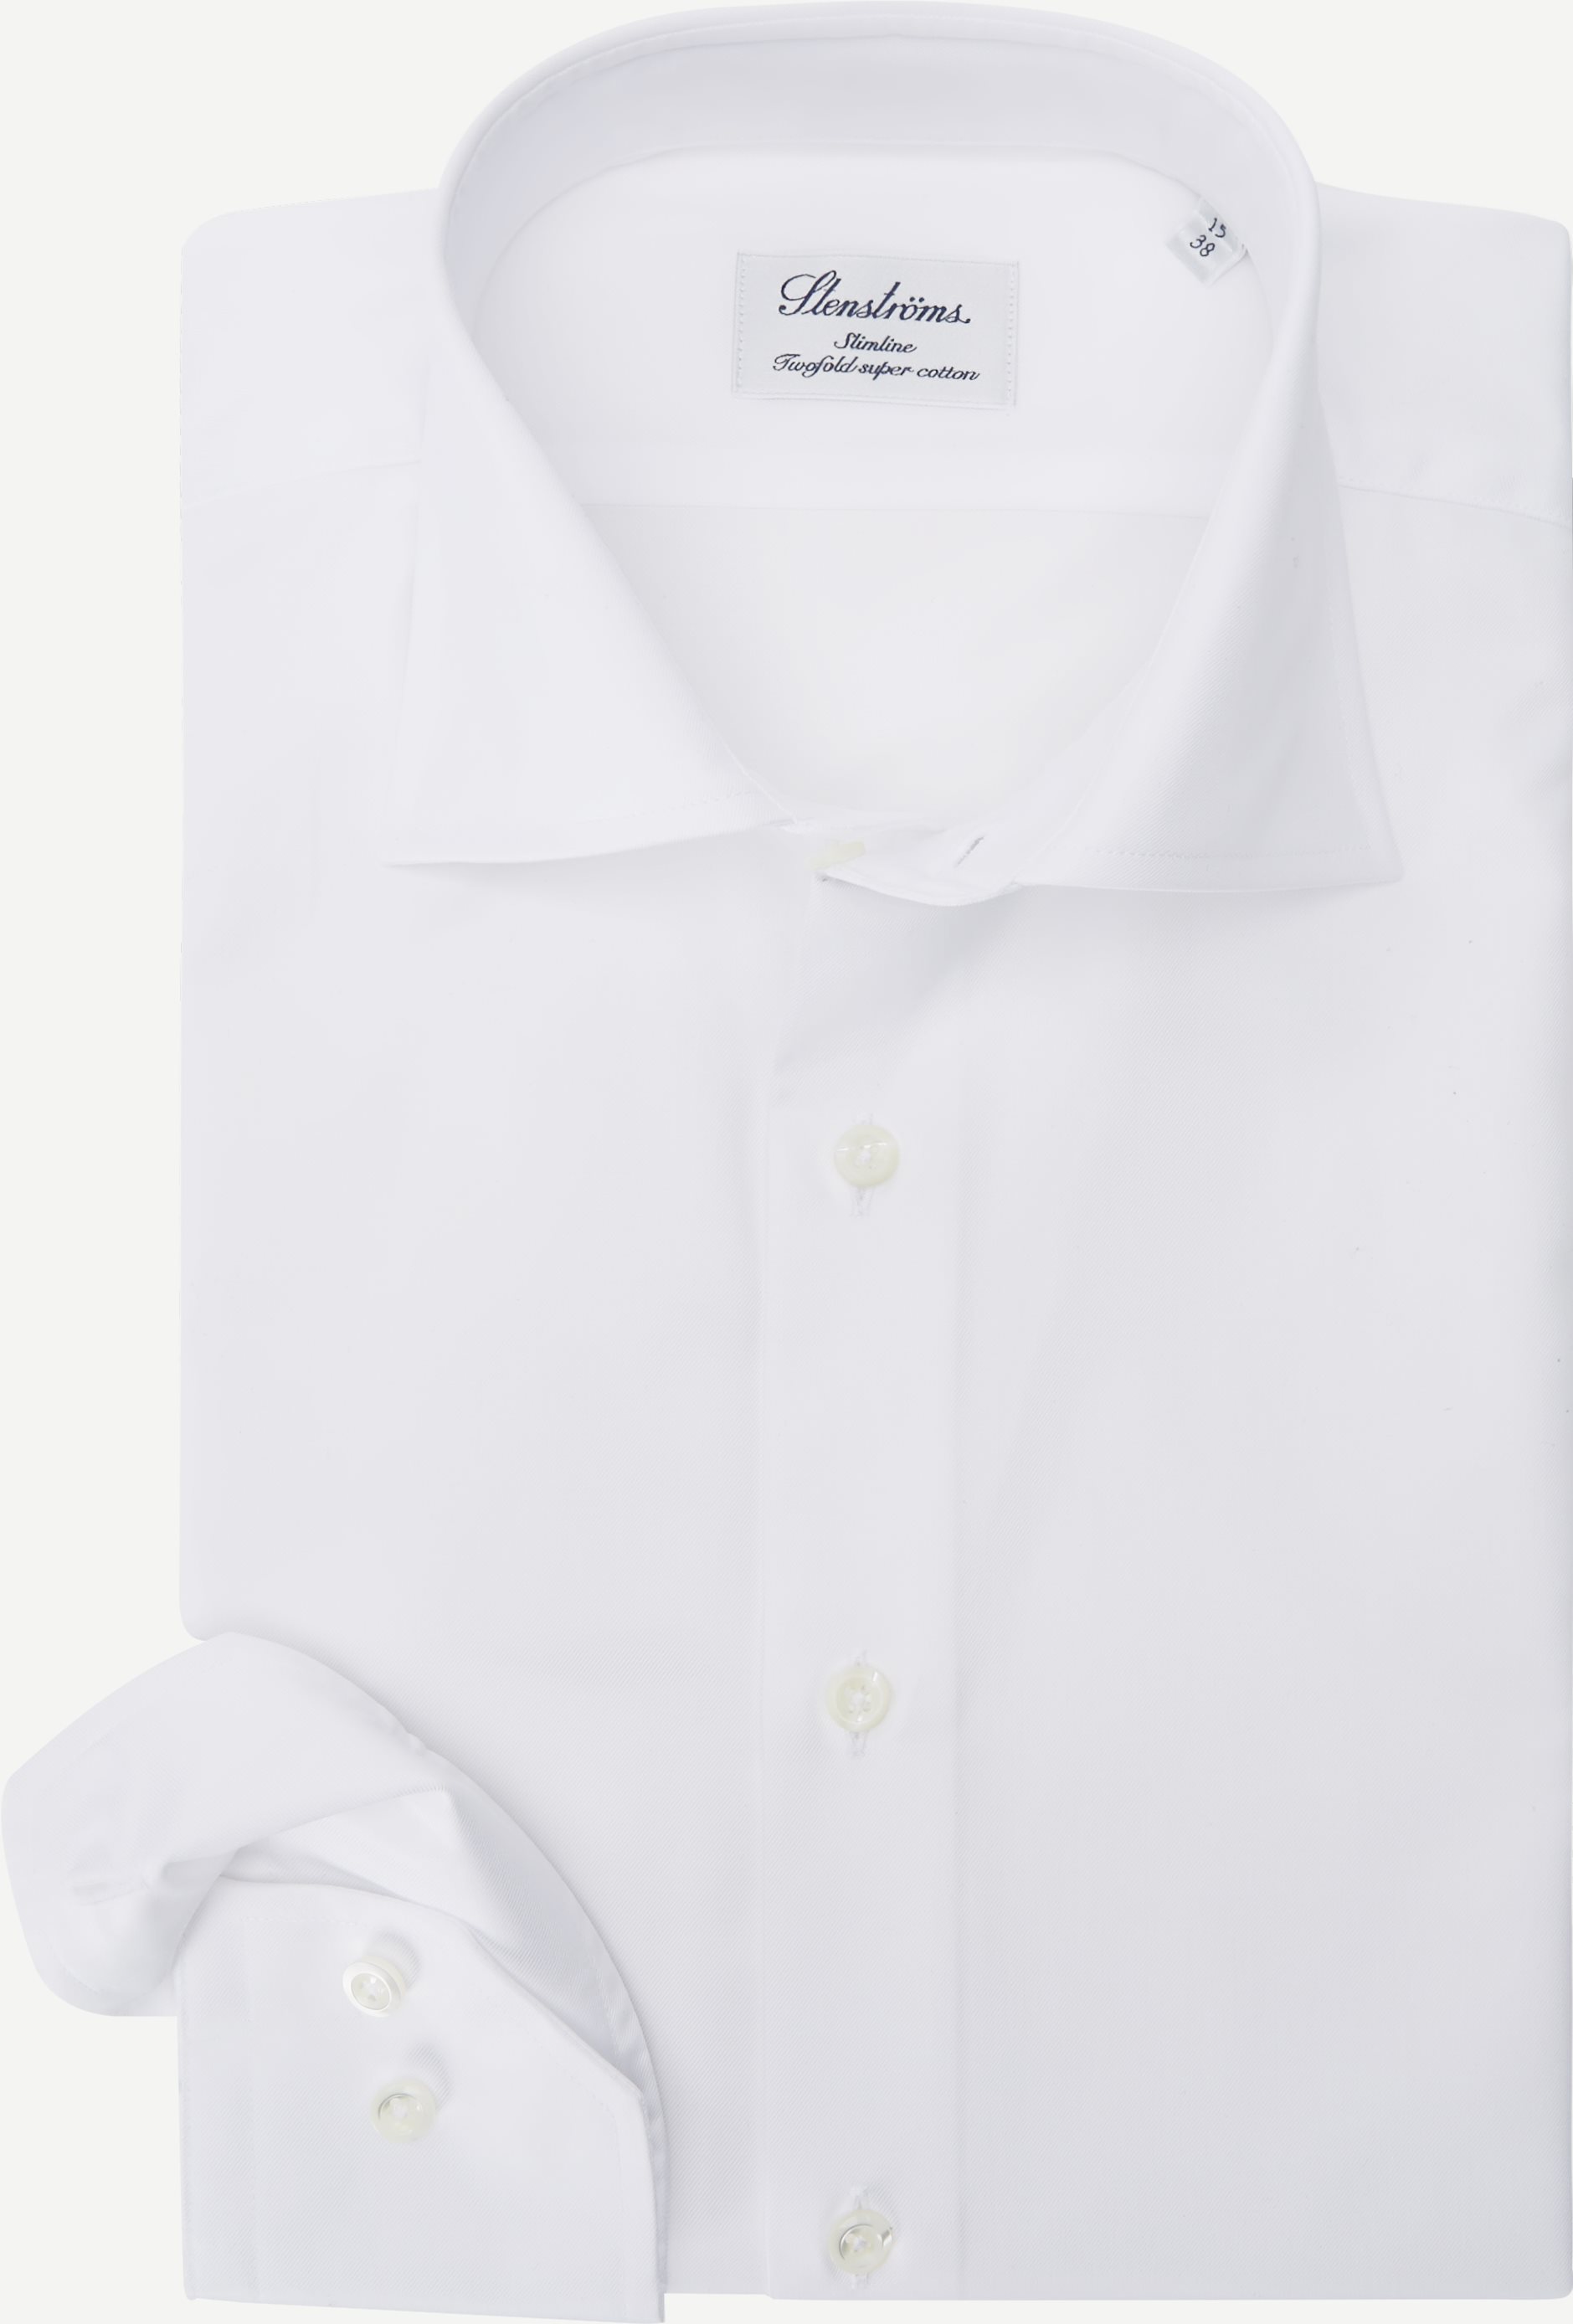 Zweifaches Super-Baumwoll-Hemd - Hemden - Slim fit - Weiß